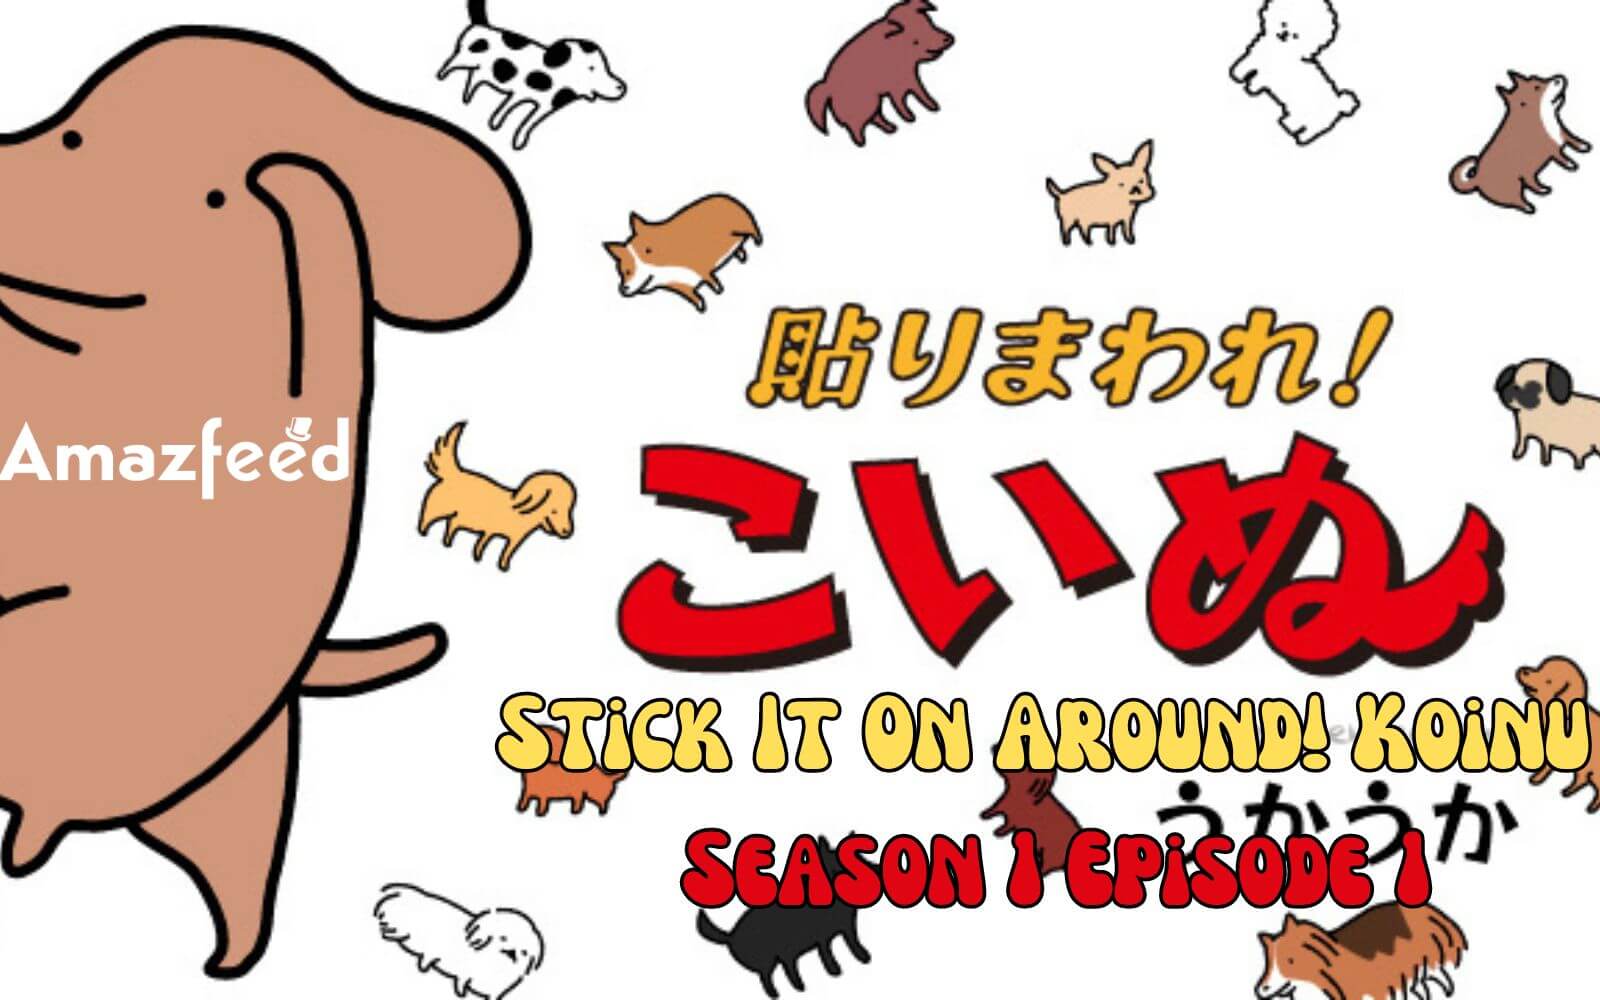 Stick It On Around! Koinu Season 1 Episode 1 release